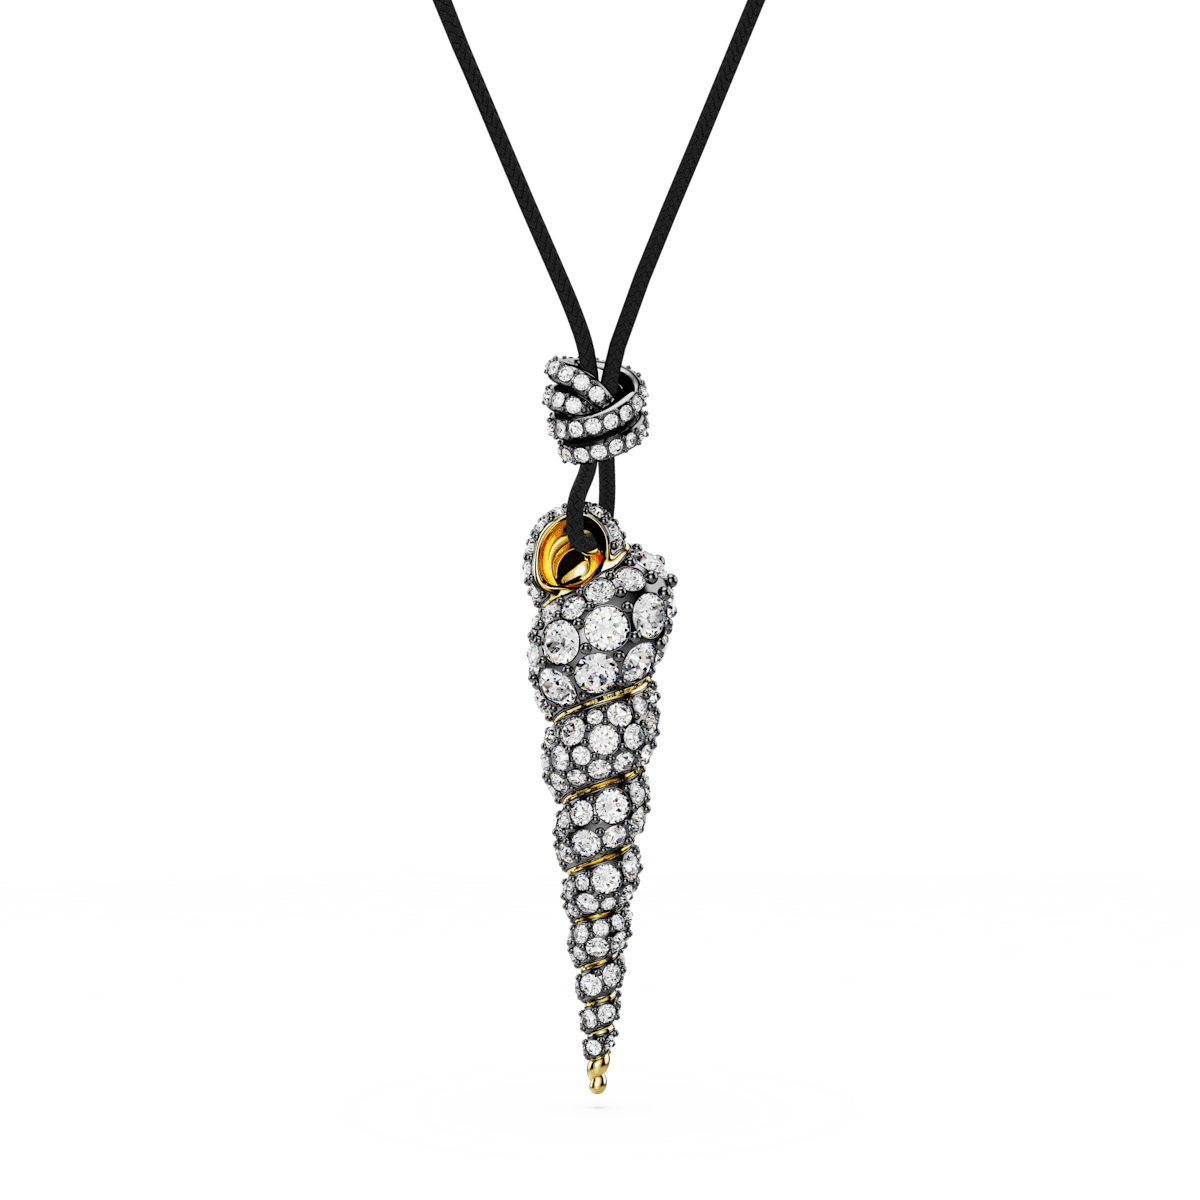 Idyllia pendant, Round cut, Shell, White, Mixed metal finish